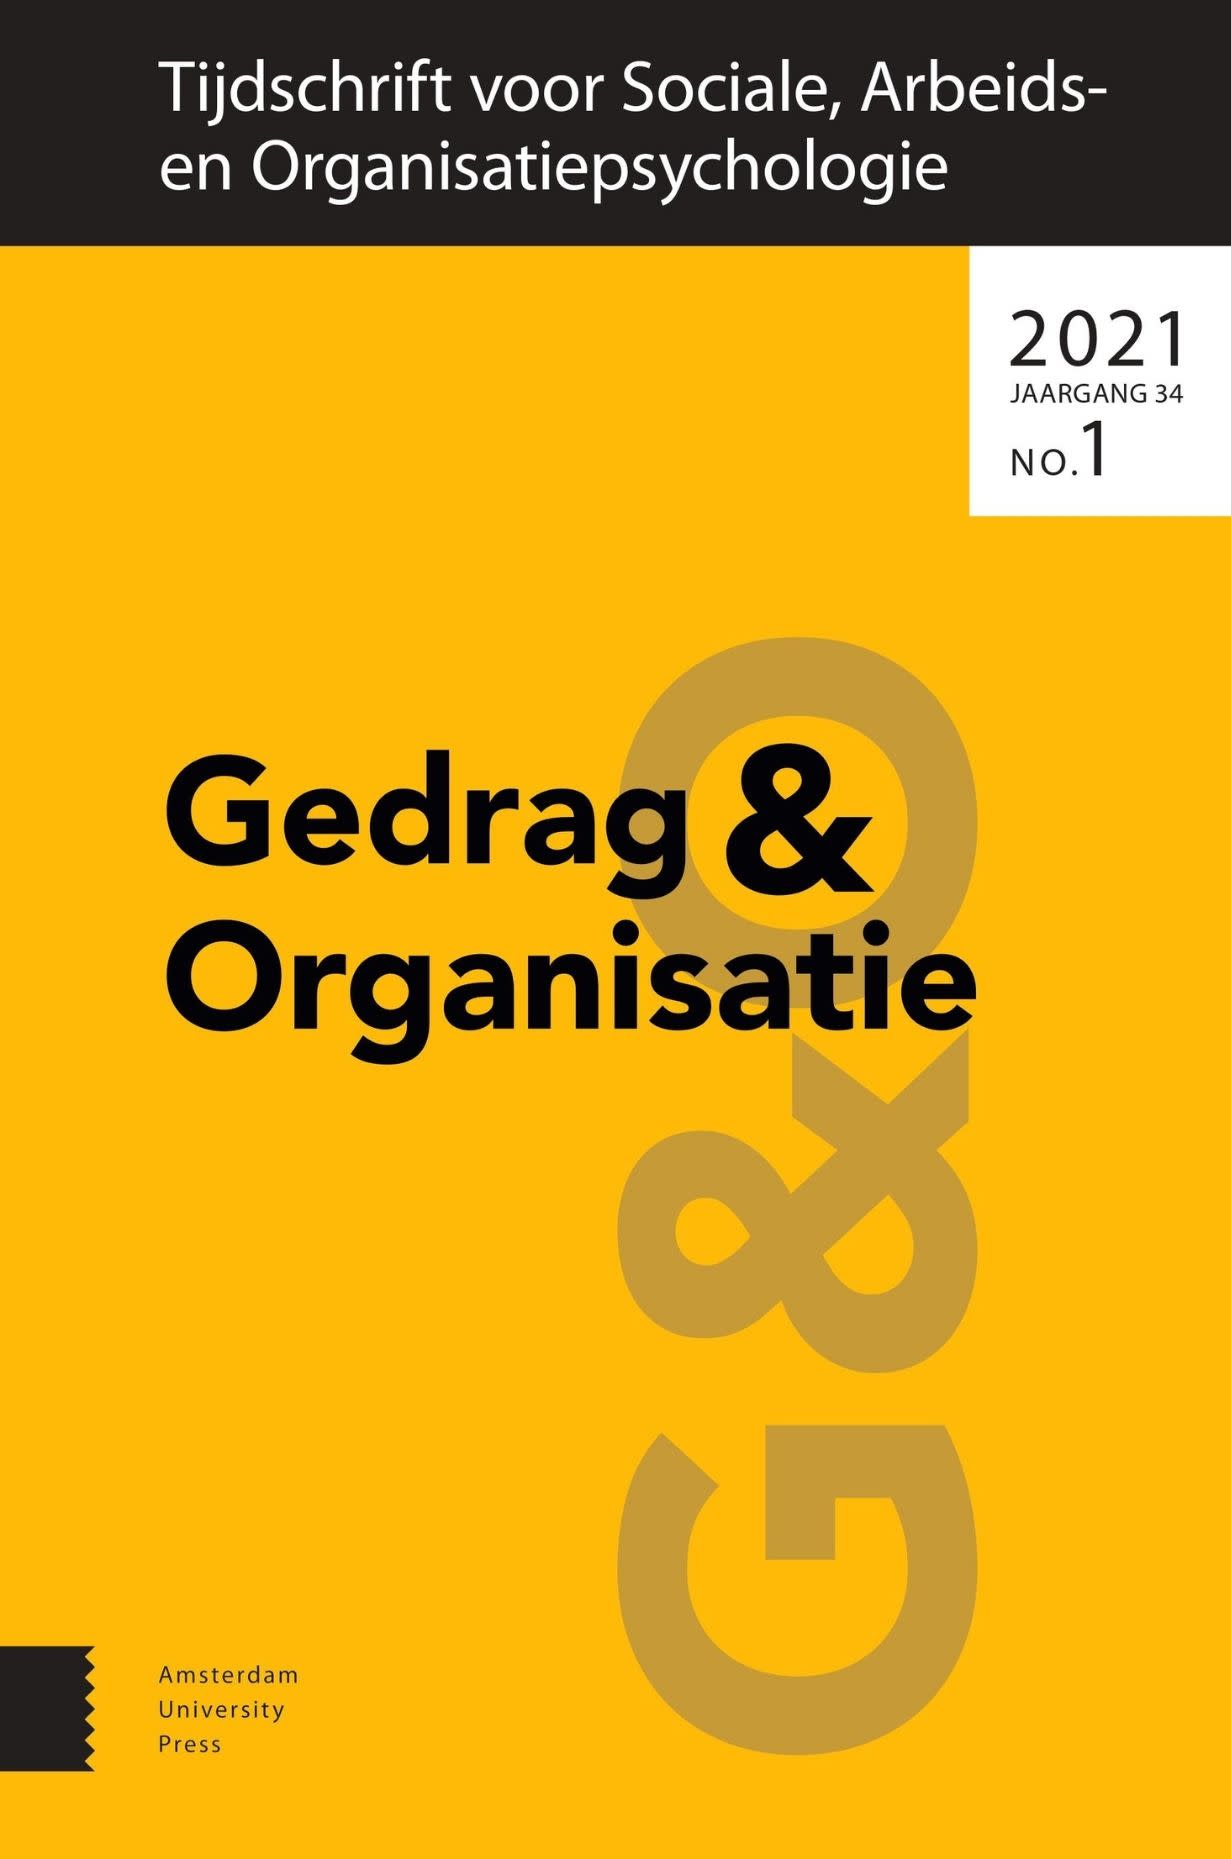 image of Gedrag & Organisatie